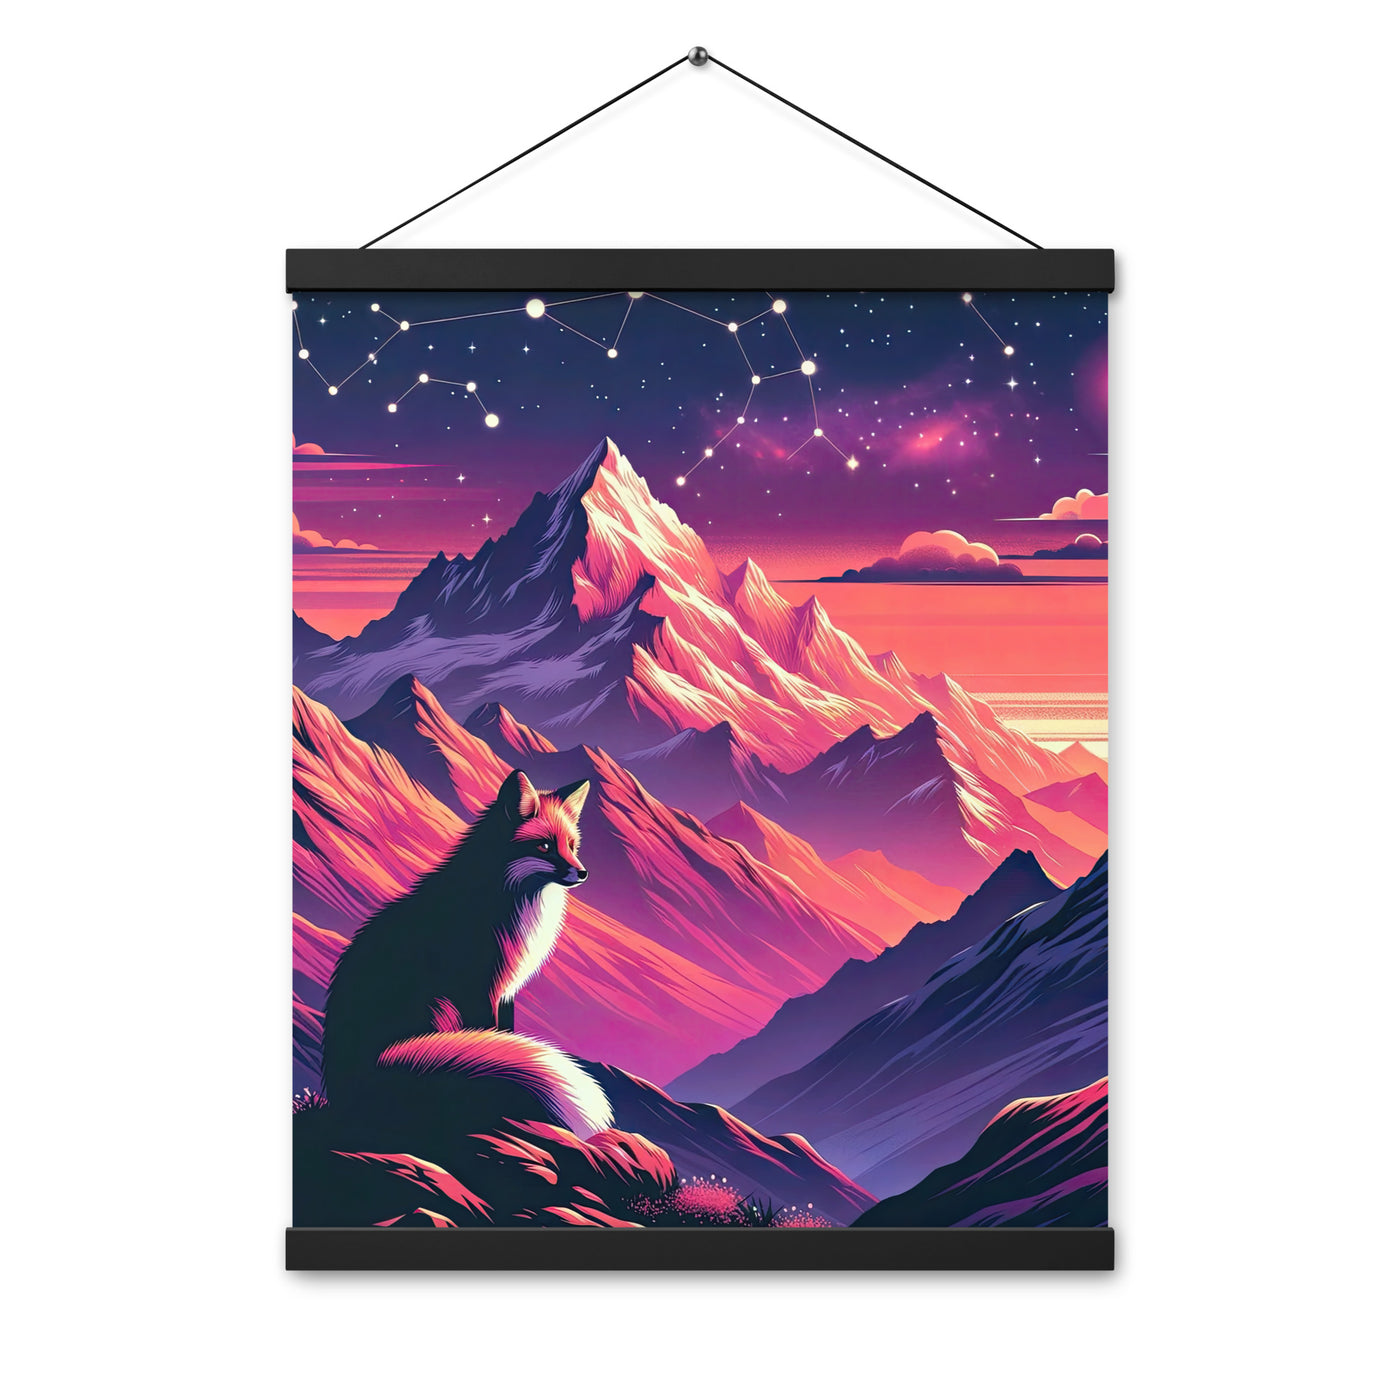 Fuchs im dramatischen Sonnenuntergang: Digitale Bergillustration in Abendfarben - Premium Poster mit Aufhängung camping xxx yyy zzz 40.6 x 50.8 cm